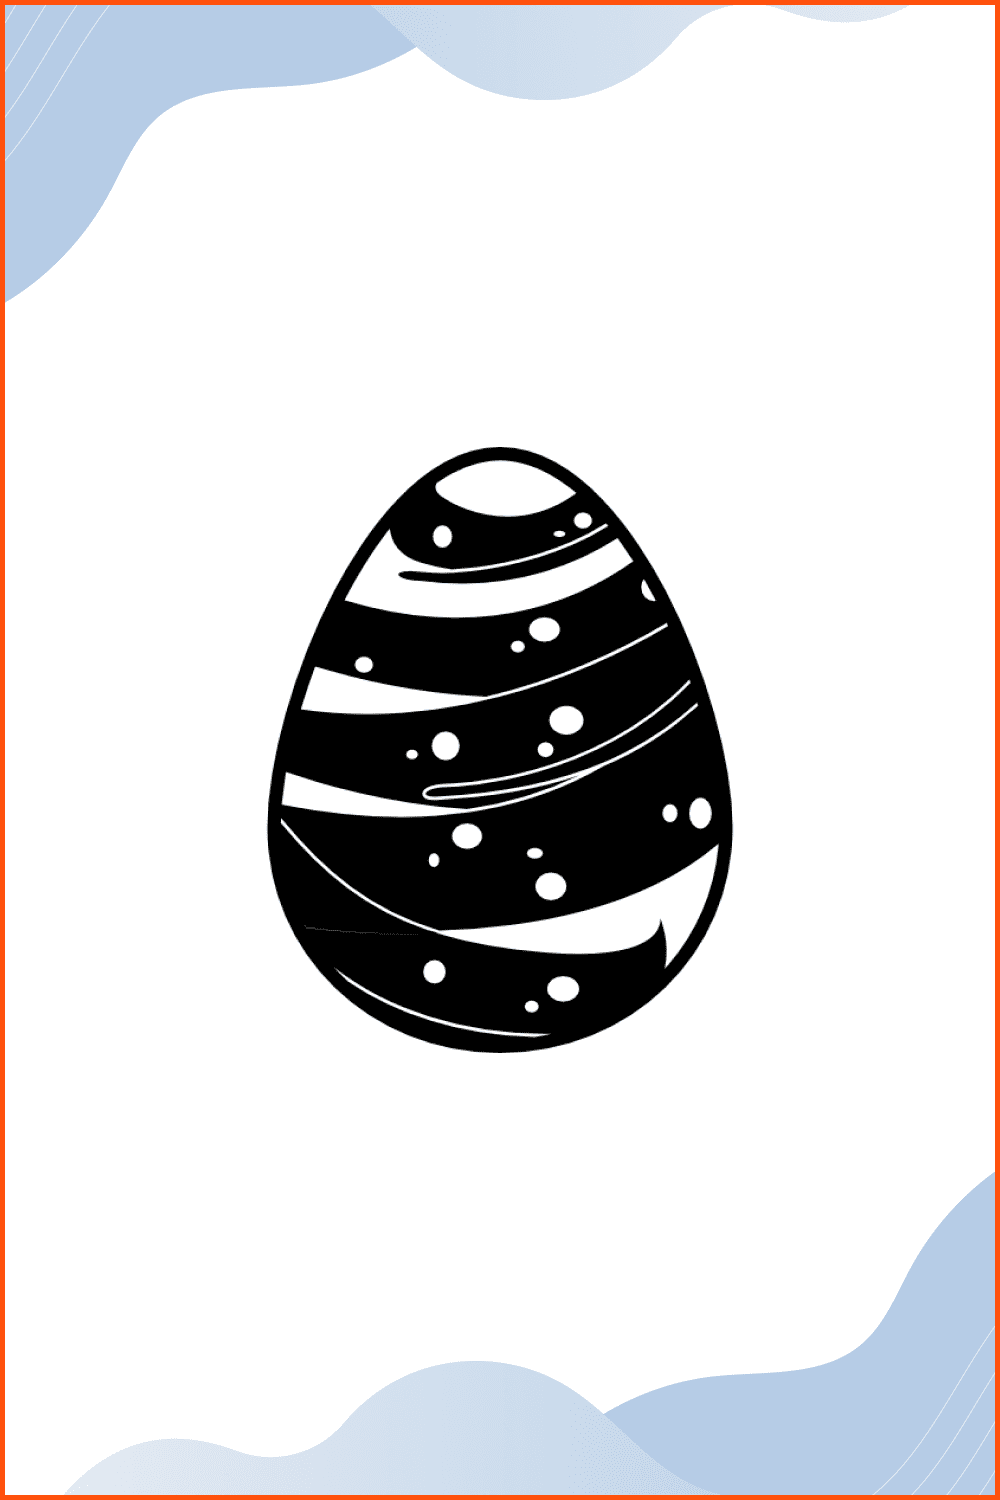 Easter egg design.